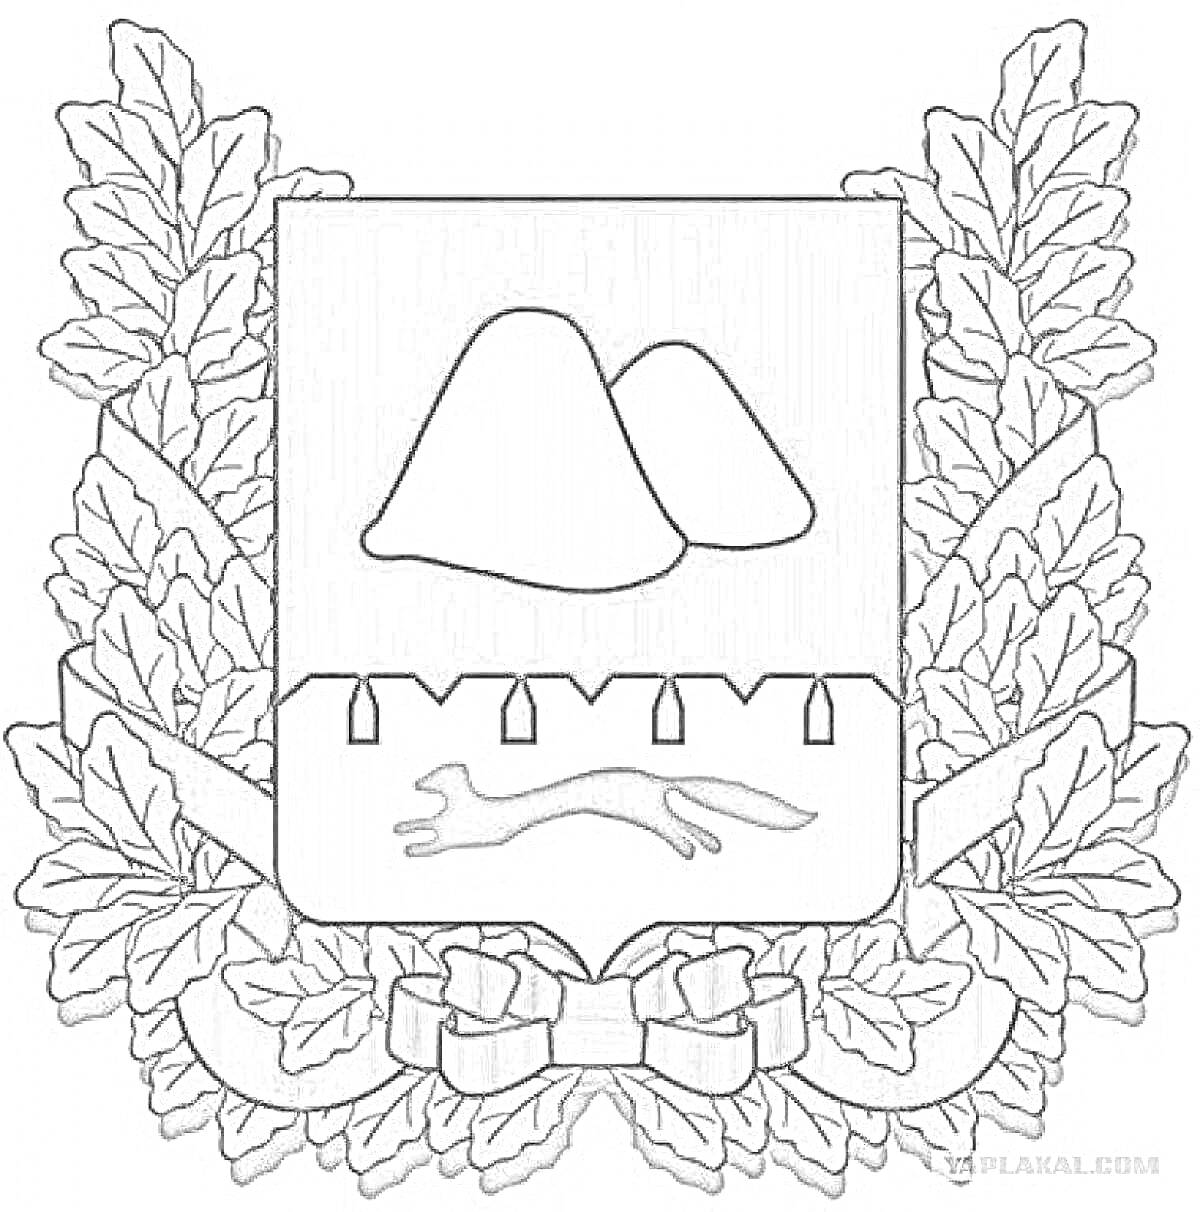 Герб Курганской области, состоящий из двух гор, части частокола и бегущей лисы, обрамленный дубовыми ветками с лентой внизу.